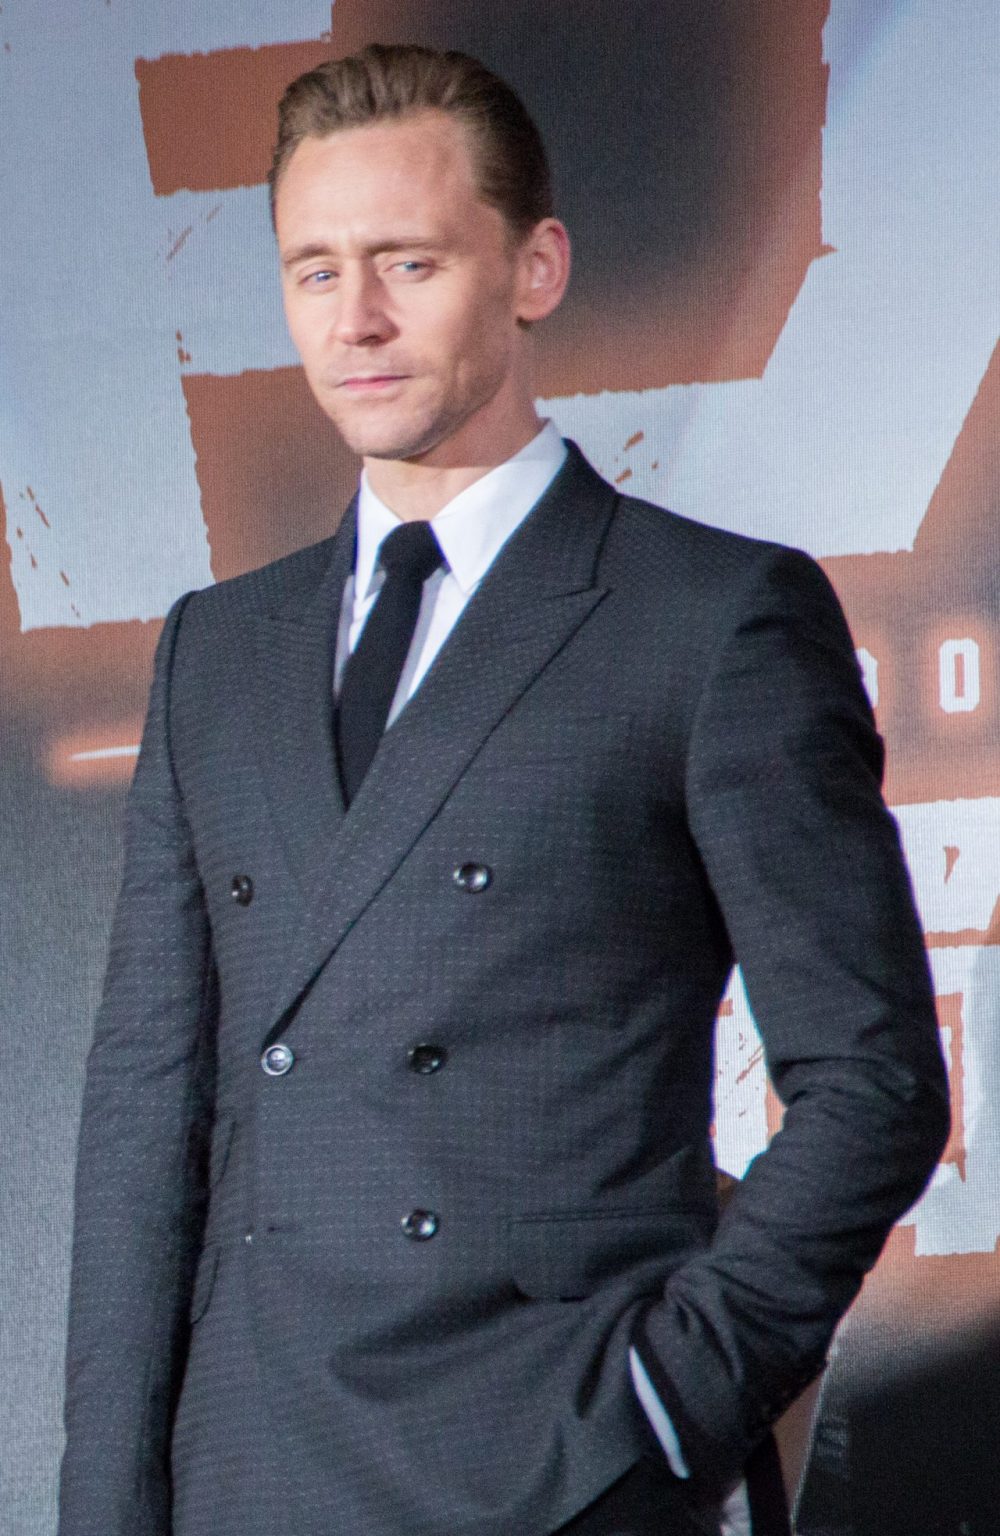 tom hiddleston trong buoi cong chieu skull island e1589440889558 - Tom Hiddleston: Chàng Loki đa tài của Marvel